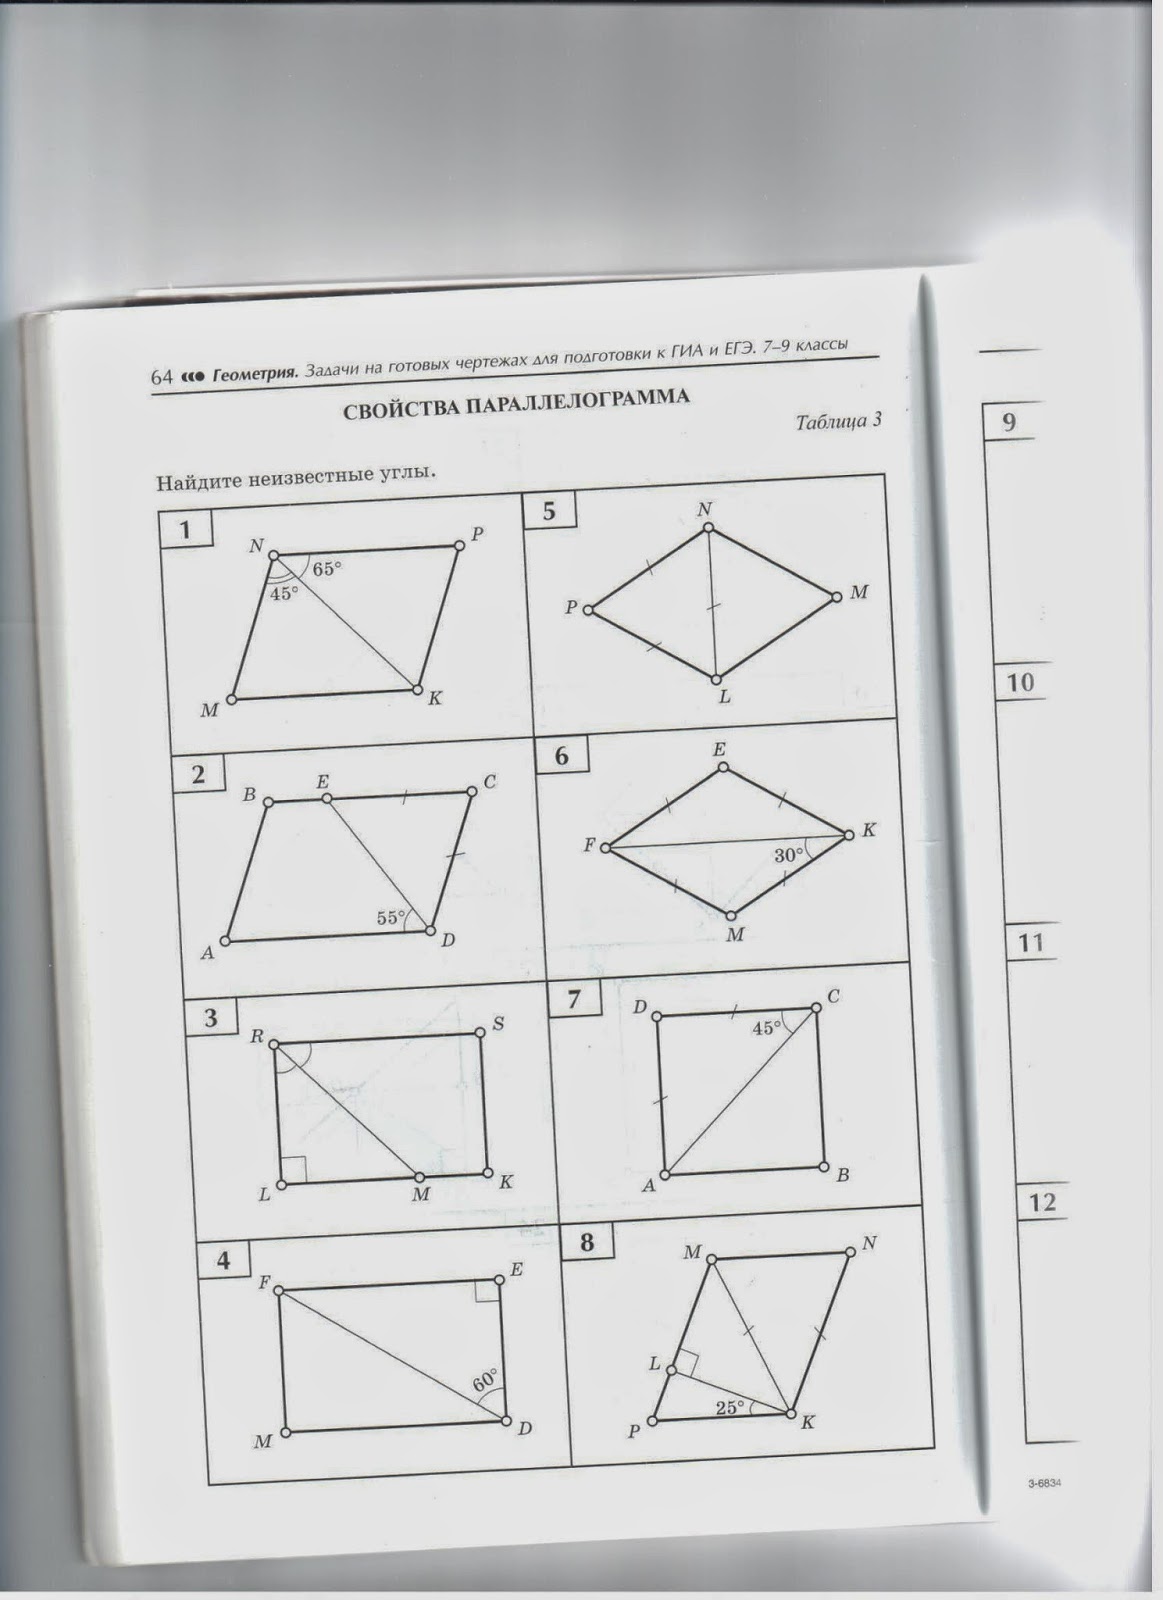 Геометрия на чертежах 7 9. Задачи на готовых чертежах для подготовки к ГИА. Геометрия в задачах. Геометрия на готовых чертежах для подготовки. Pflfxb yg ujnjds[ xthxt;f[ lkz gjlujnjdrb r UBD.